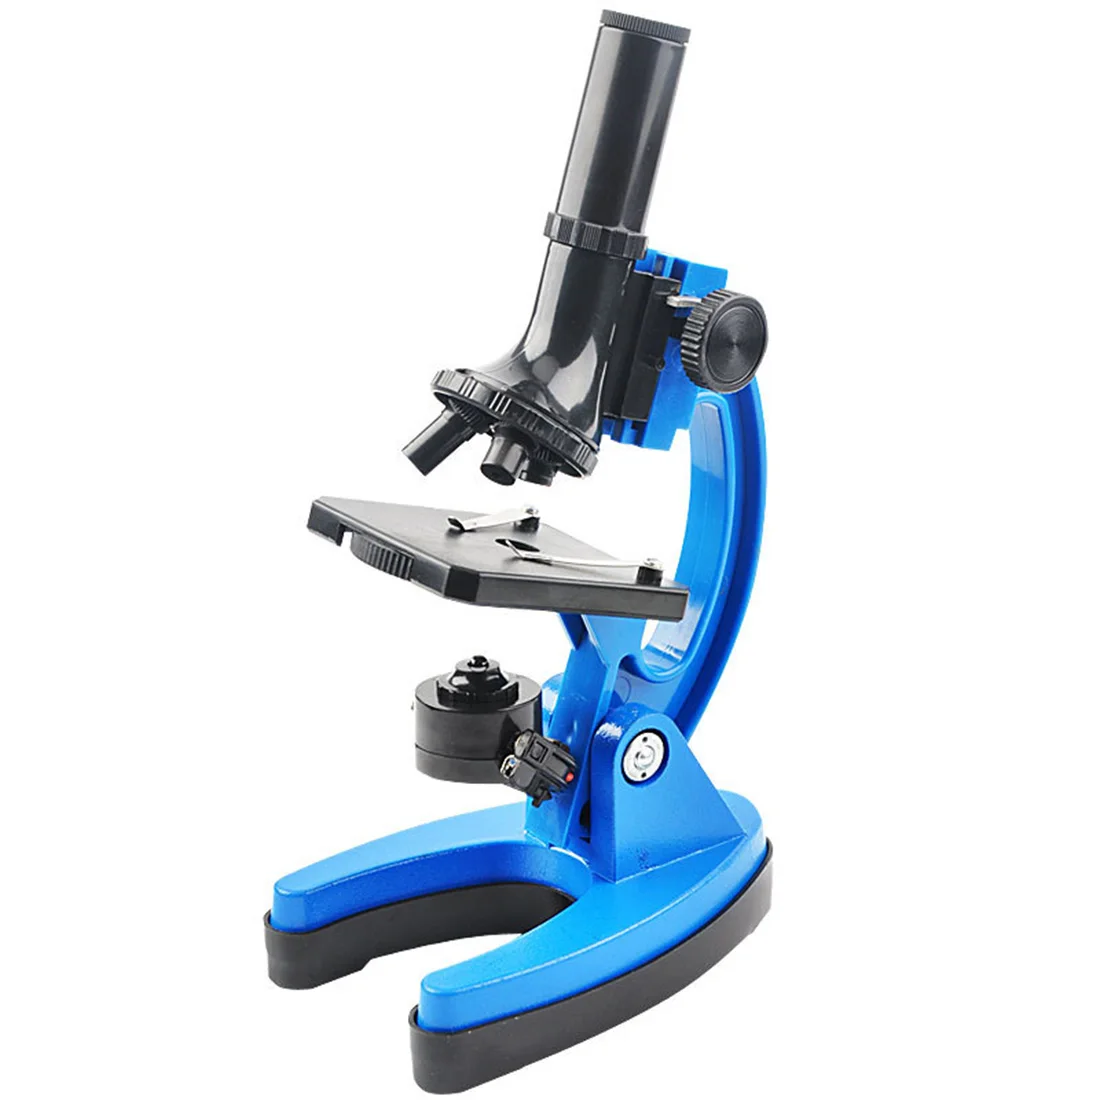 Surwish Прочный Студентов лаборатории 1200 детей металла Инструмент-микроскоп комплект для Neture наука обучения-синий